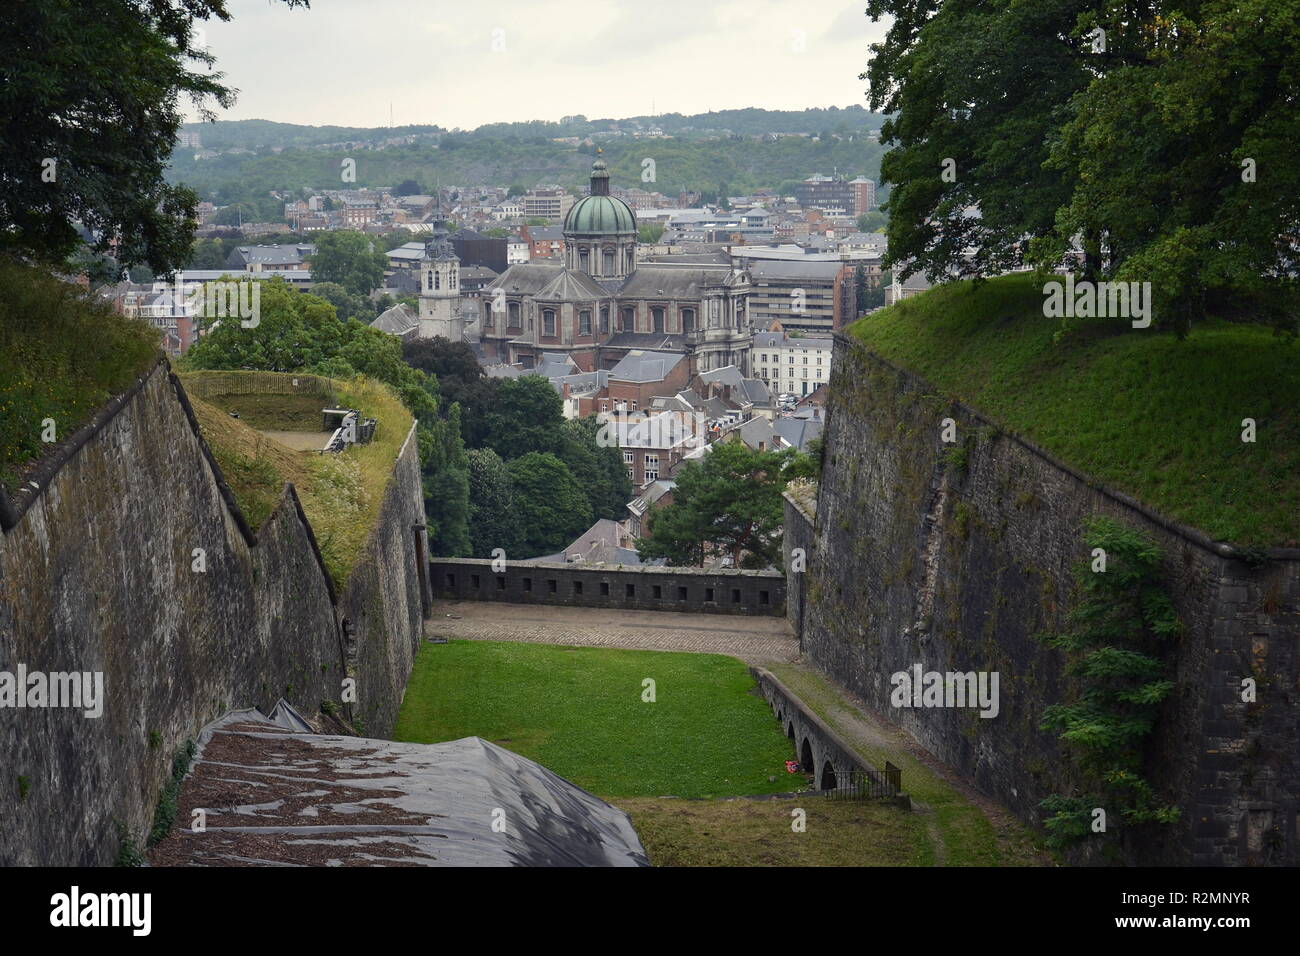 La ville belge de Namur, capitale de la province de Namur et la Wallonie, vue aérienne Banque D'Images